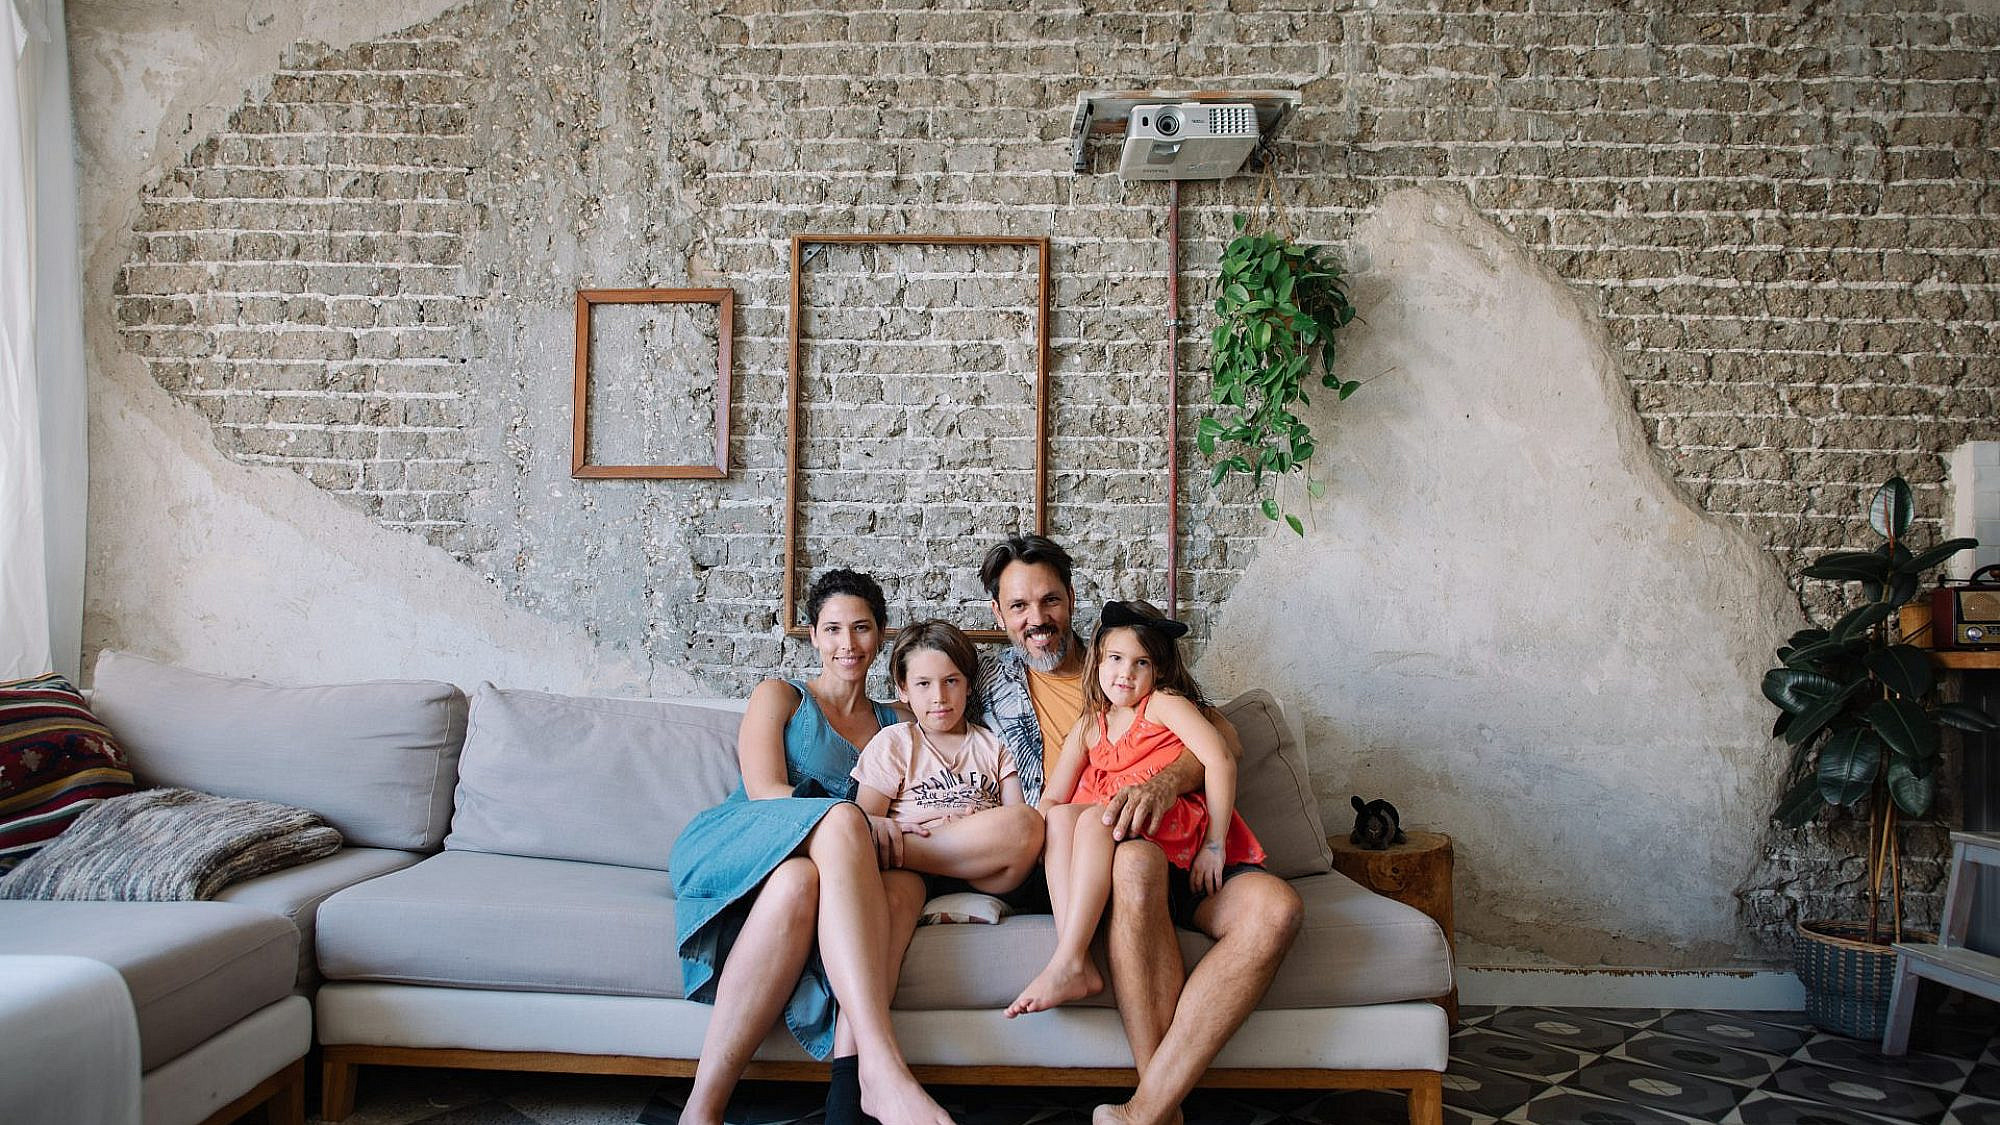 גאיה, דאריל, אדם ורוני בסלון הדירה (צילום: אור עדני)